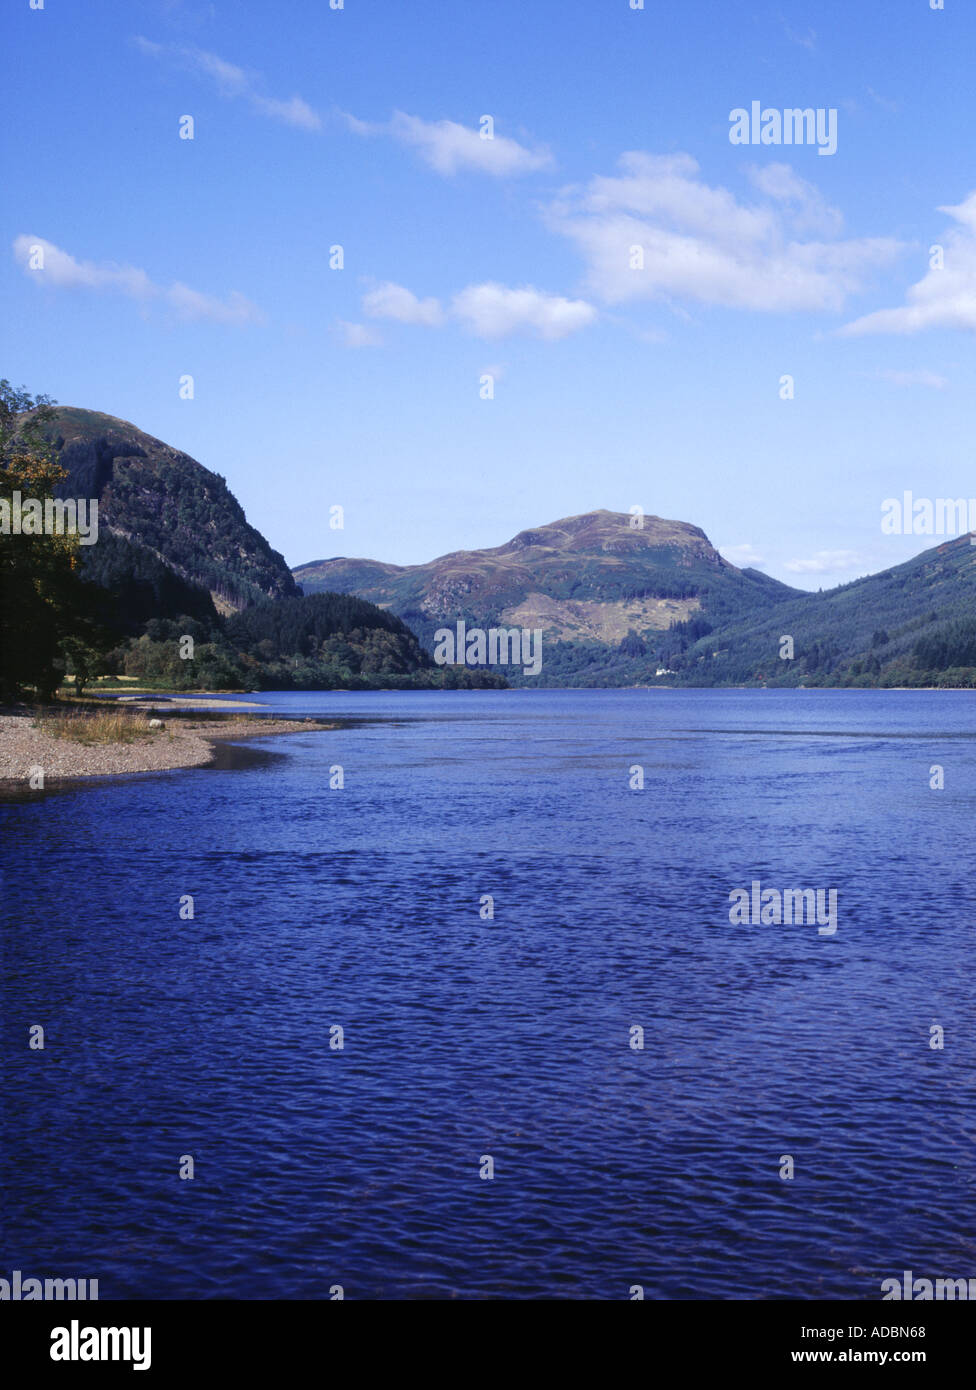 dh Loch Lubnaig scozia STRATHYRE STIRLINGSHIRE Trossachs National Park Lochside scenico montagna picco roccioso quiete altopiani trossach cielo blu Foto Stock